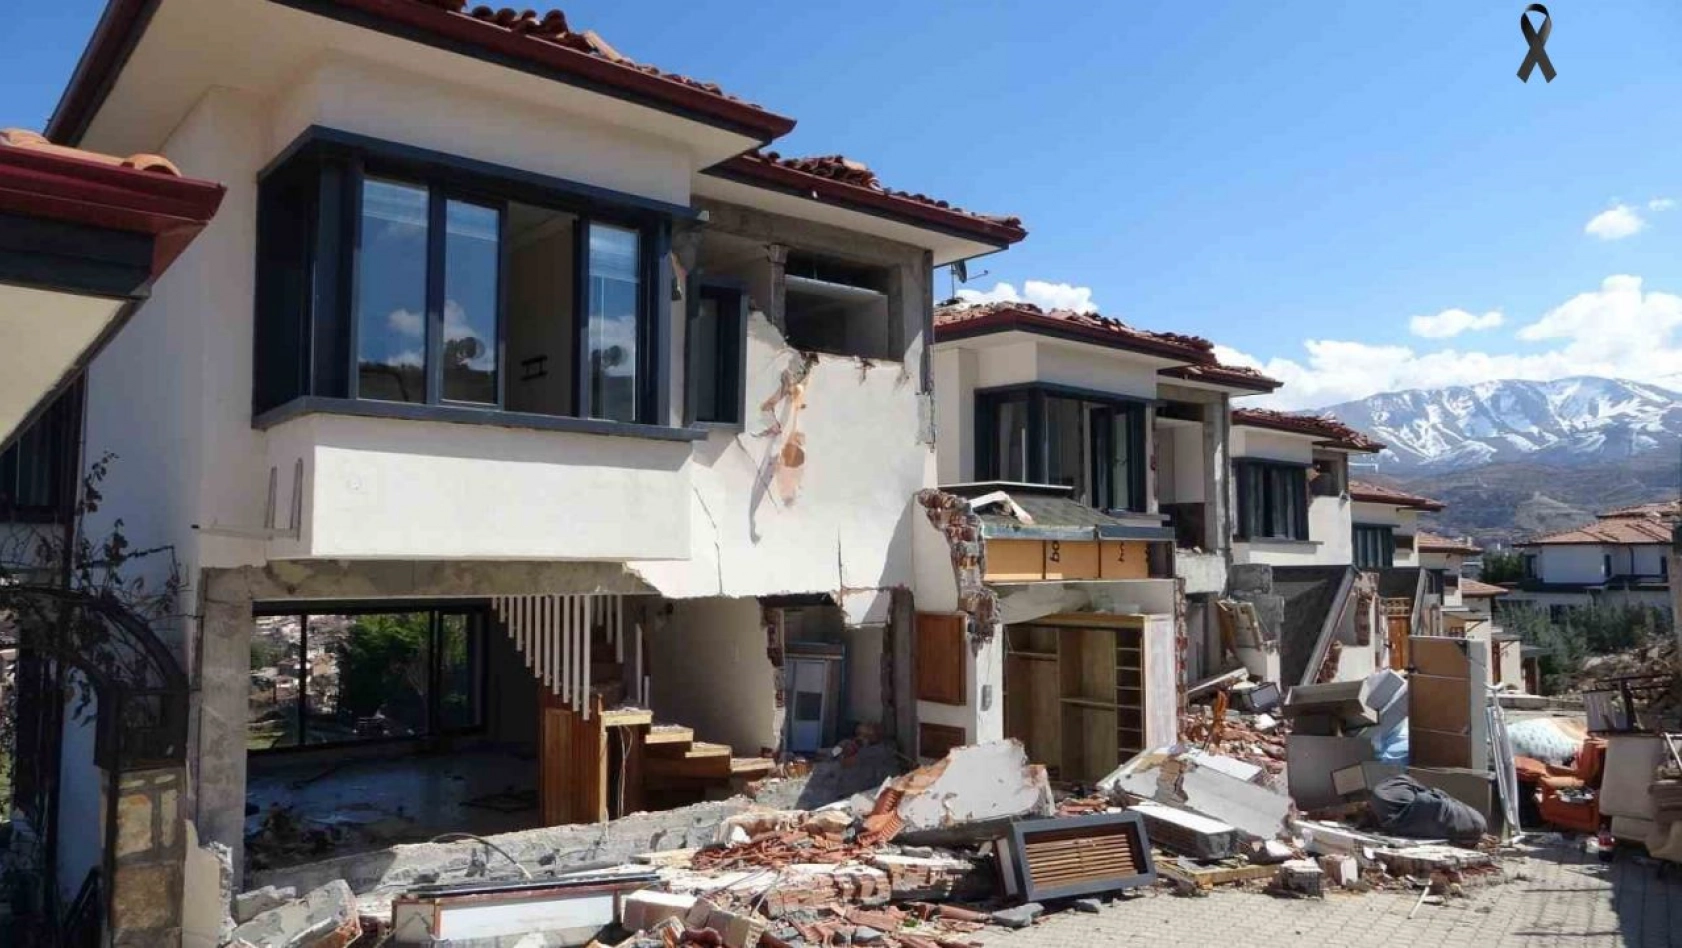 Milyonluk villalar depremde kağıt gibi dağıldı